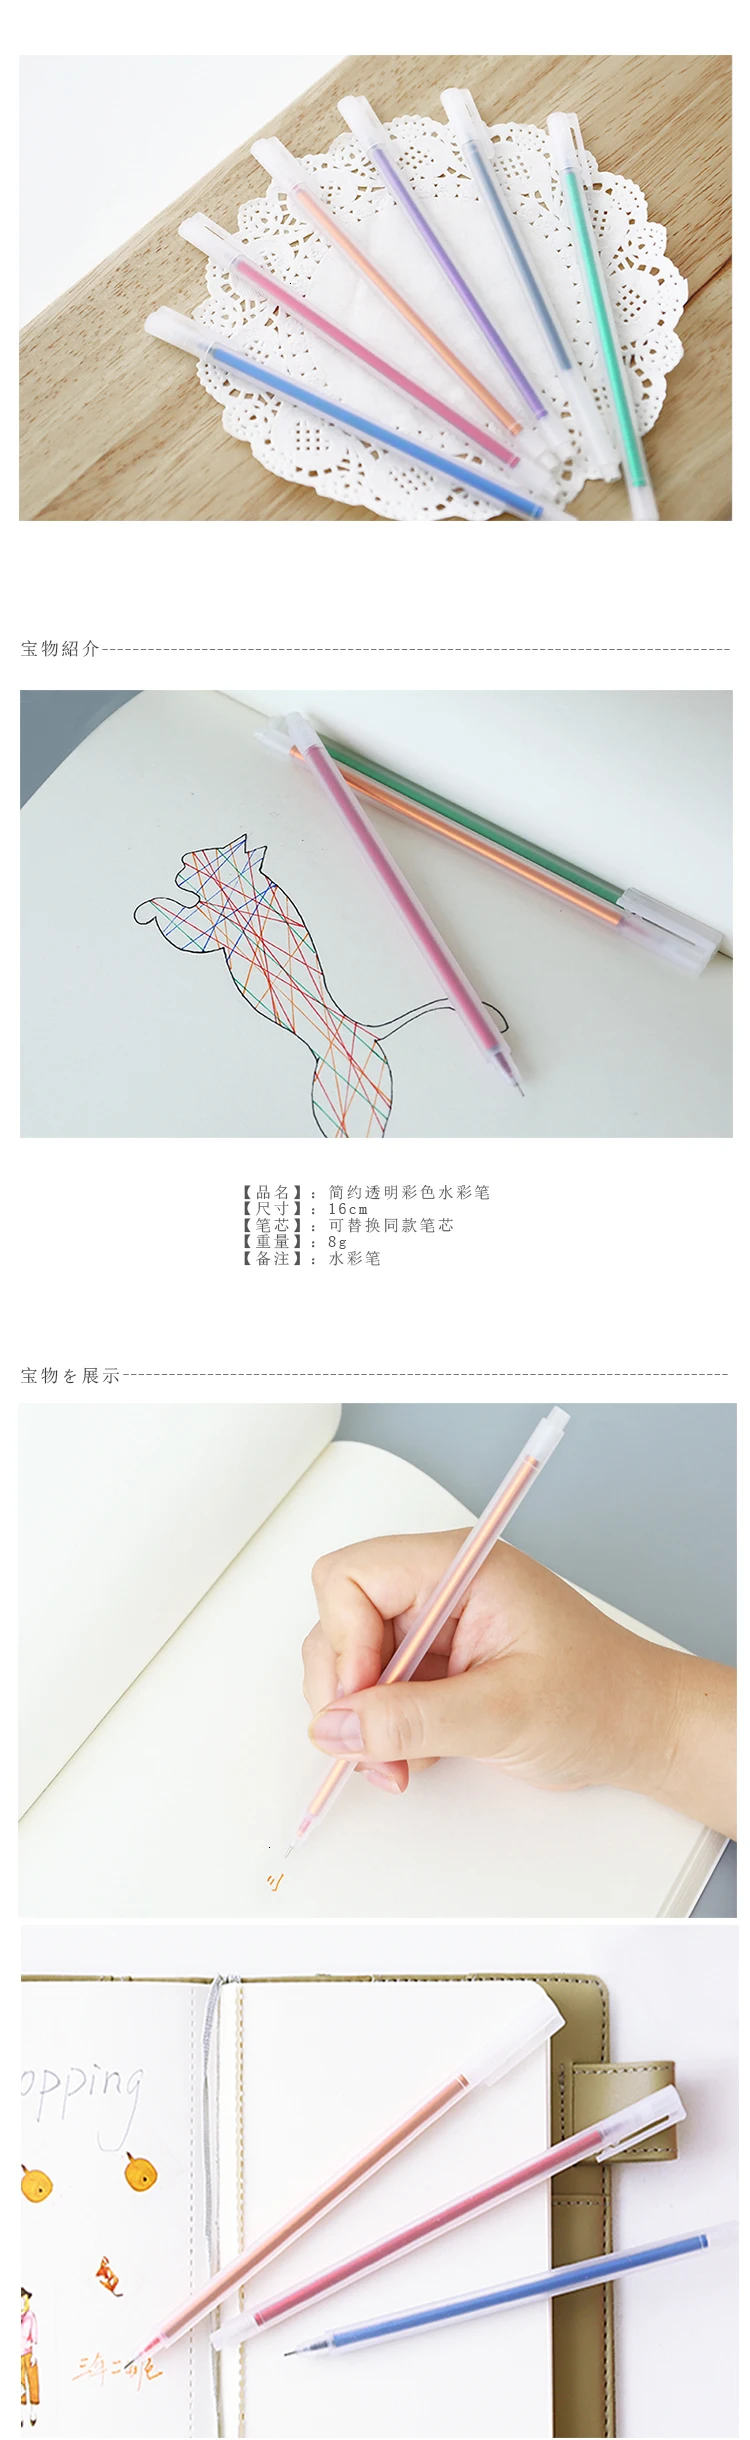 JIANWU 6 шт 0,5 мм гелевая ручка заправка простой, но элегантный Цвет гелевая ручка подарок школьные офисные принадлежности